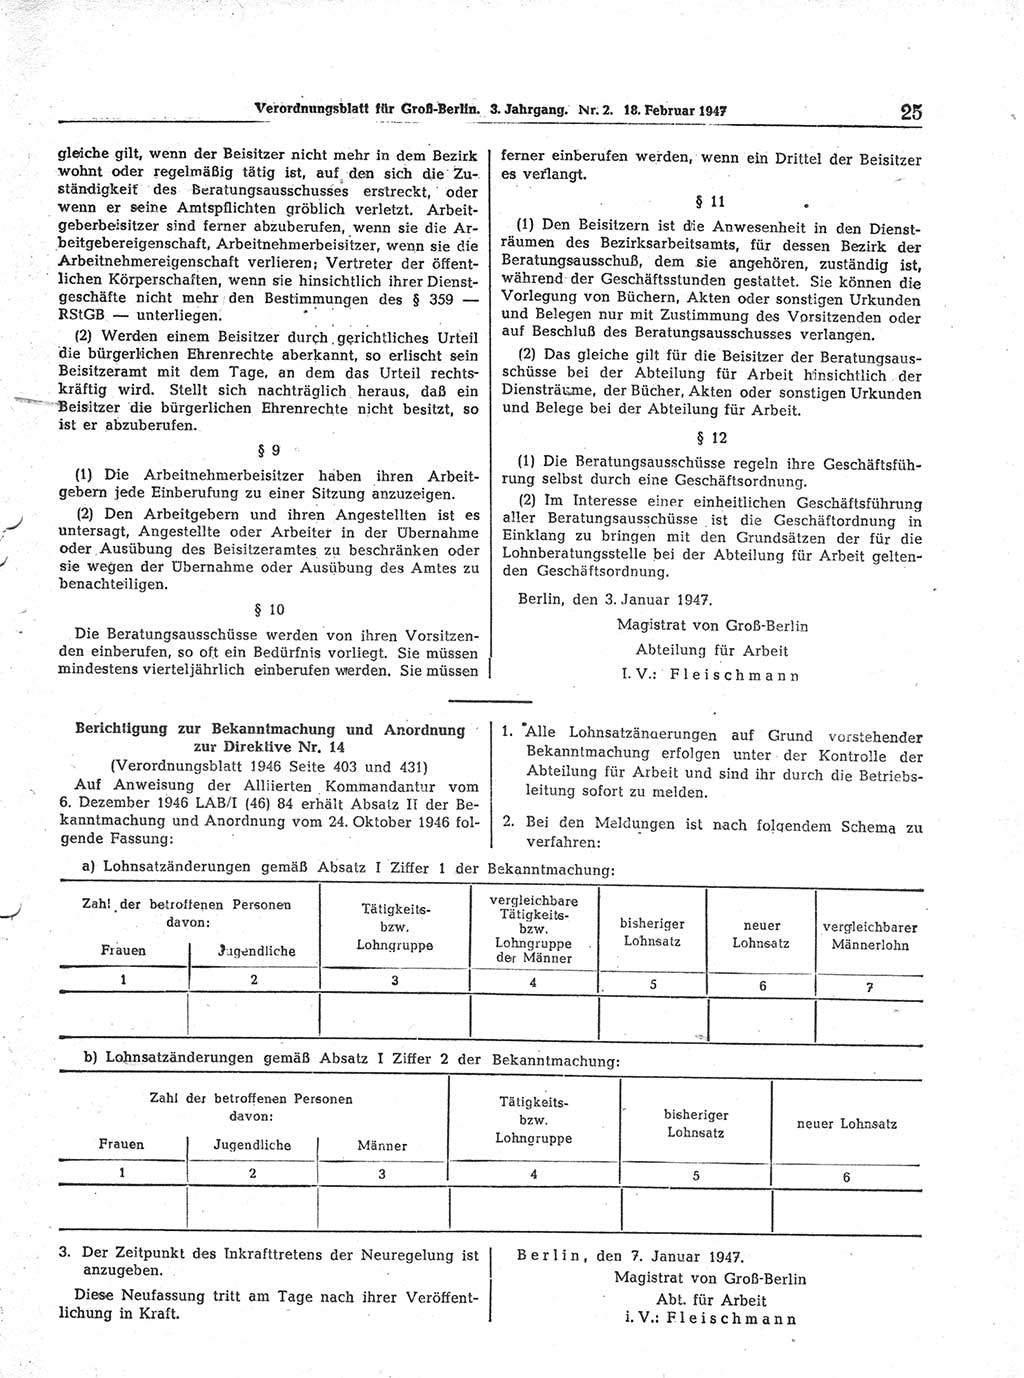 Verordnungsblatt (VOBl.) für Groß-Berlin 1947, Seite 25 (VOBl. Bln. 1947, S. 25)